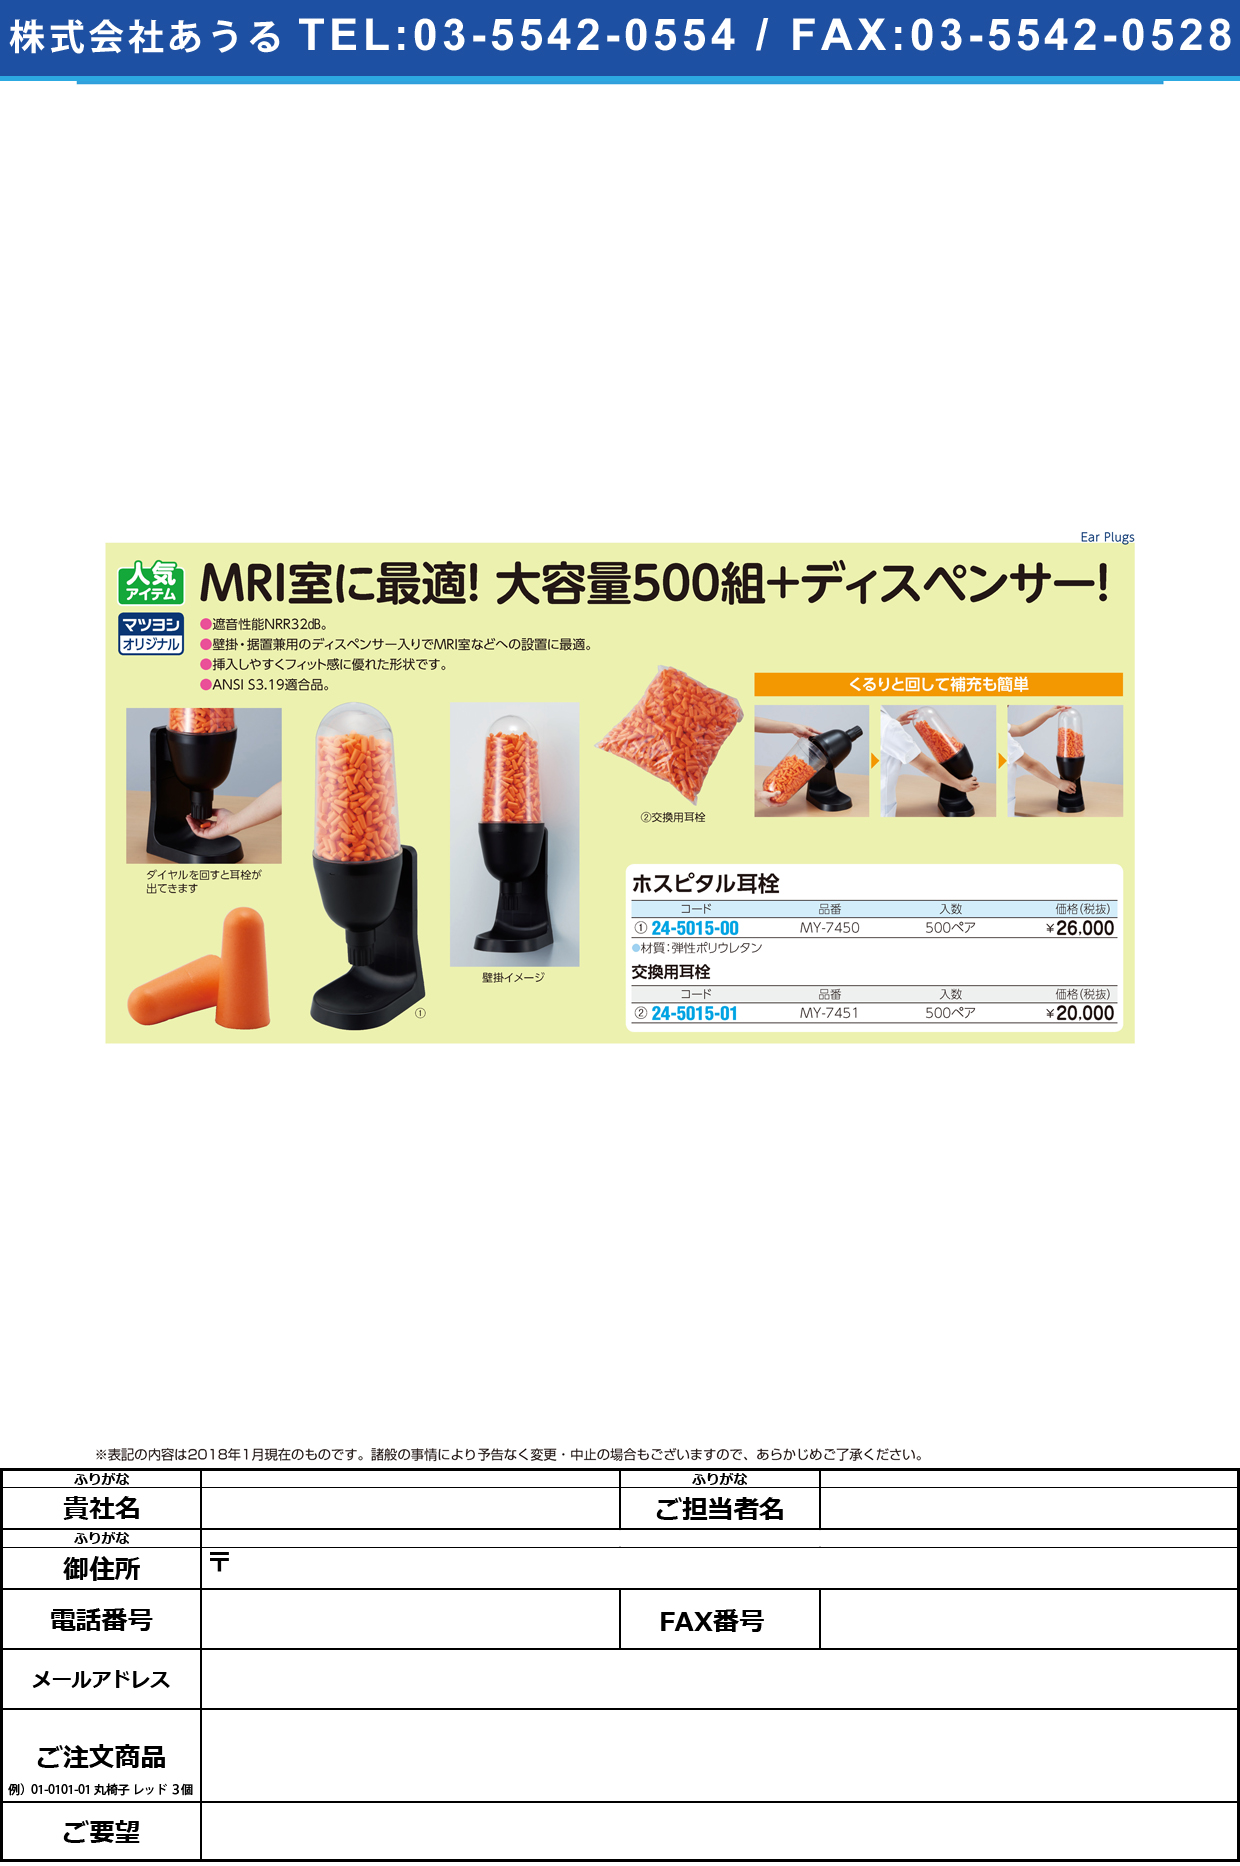 (24-5015-00)ホスピタル耳栓 MY-7450(500ﾍﾟｱ) ﾎｽﾋﾟﾀﾙﾐﾐｾﾝ【1組単位】【2019年カタログ商品】